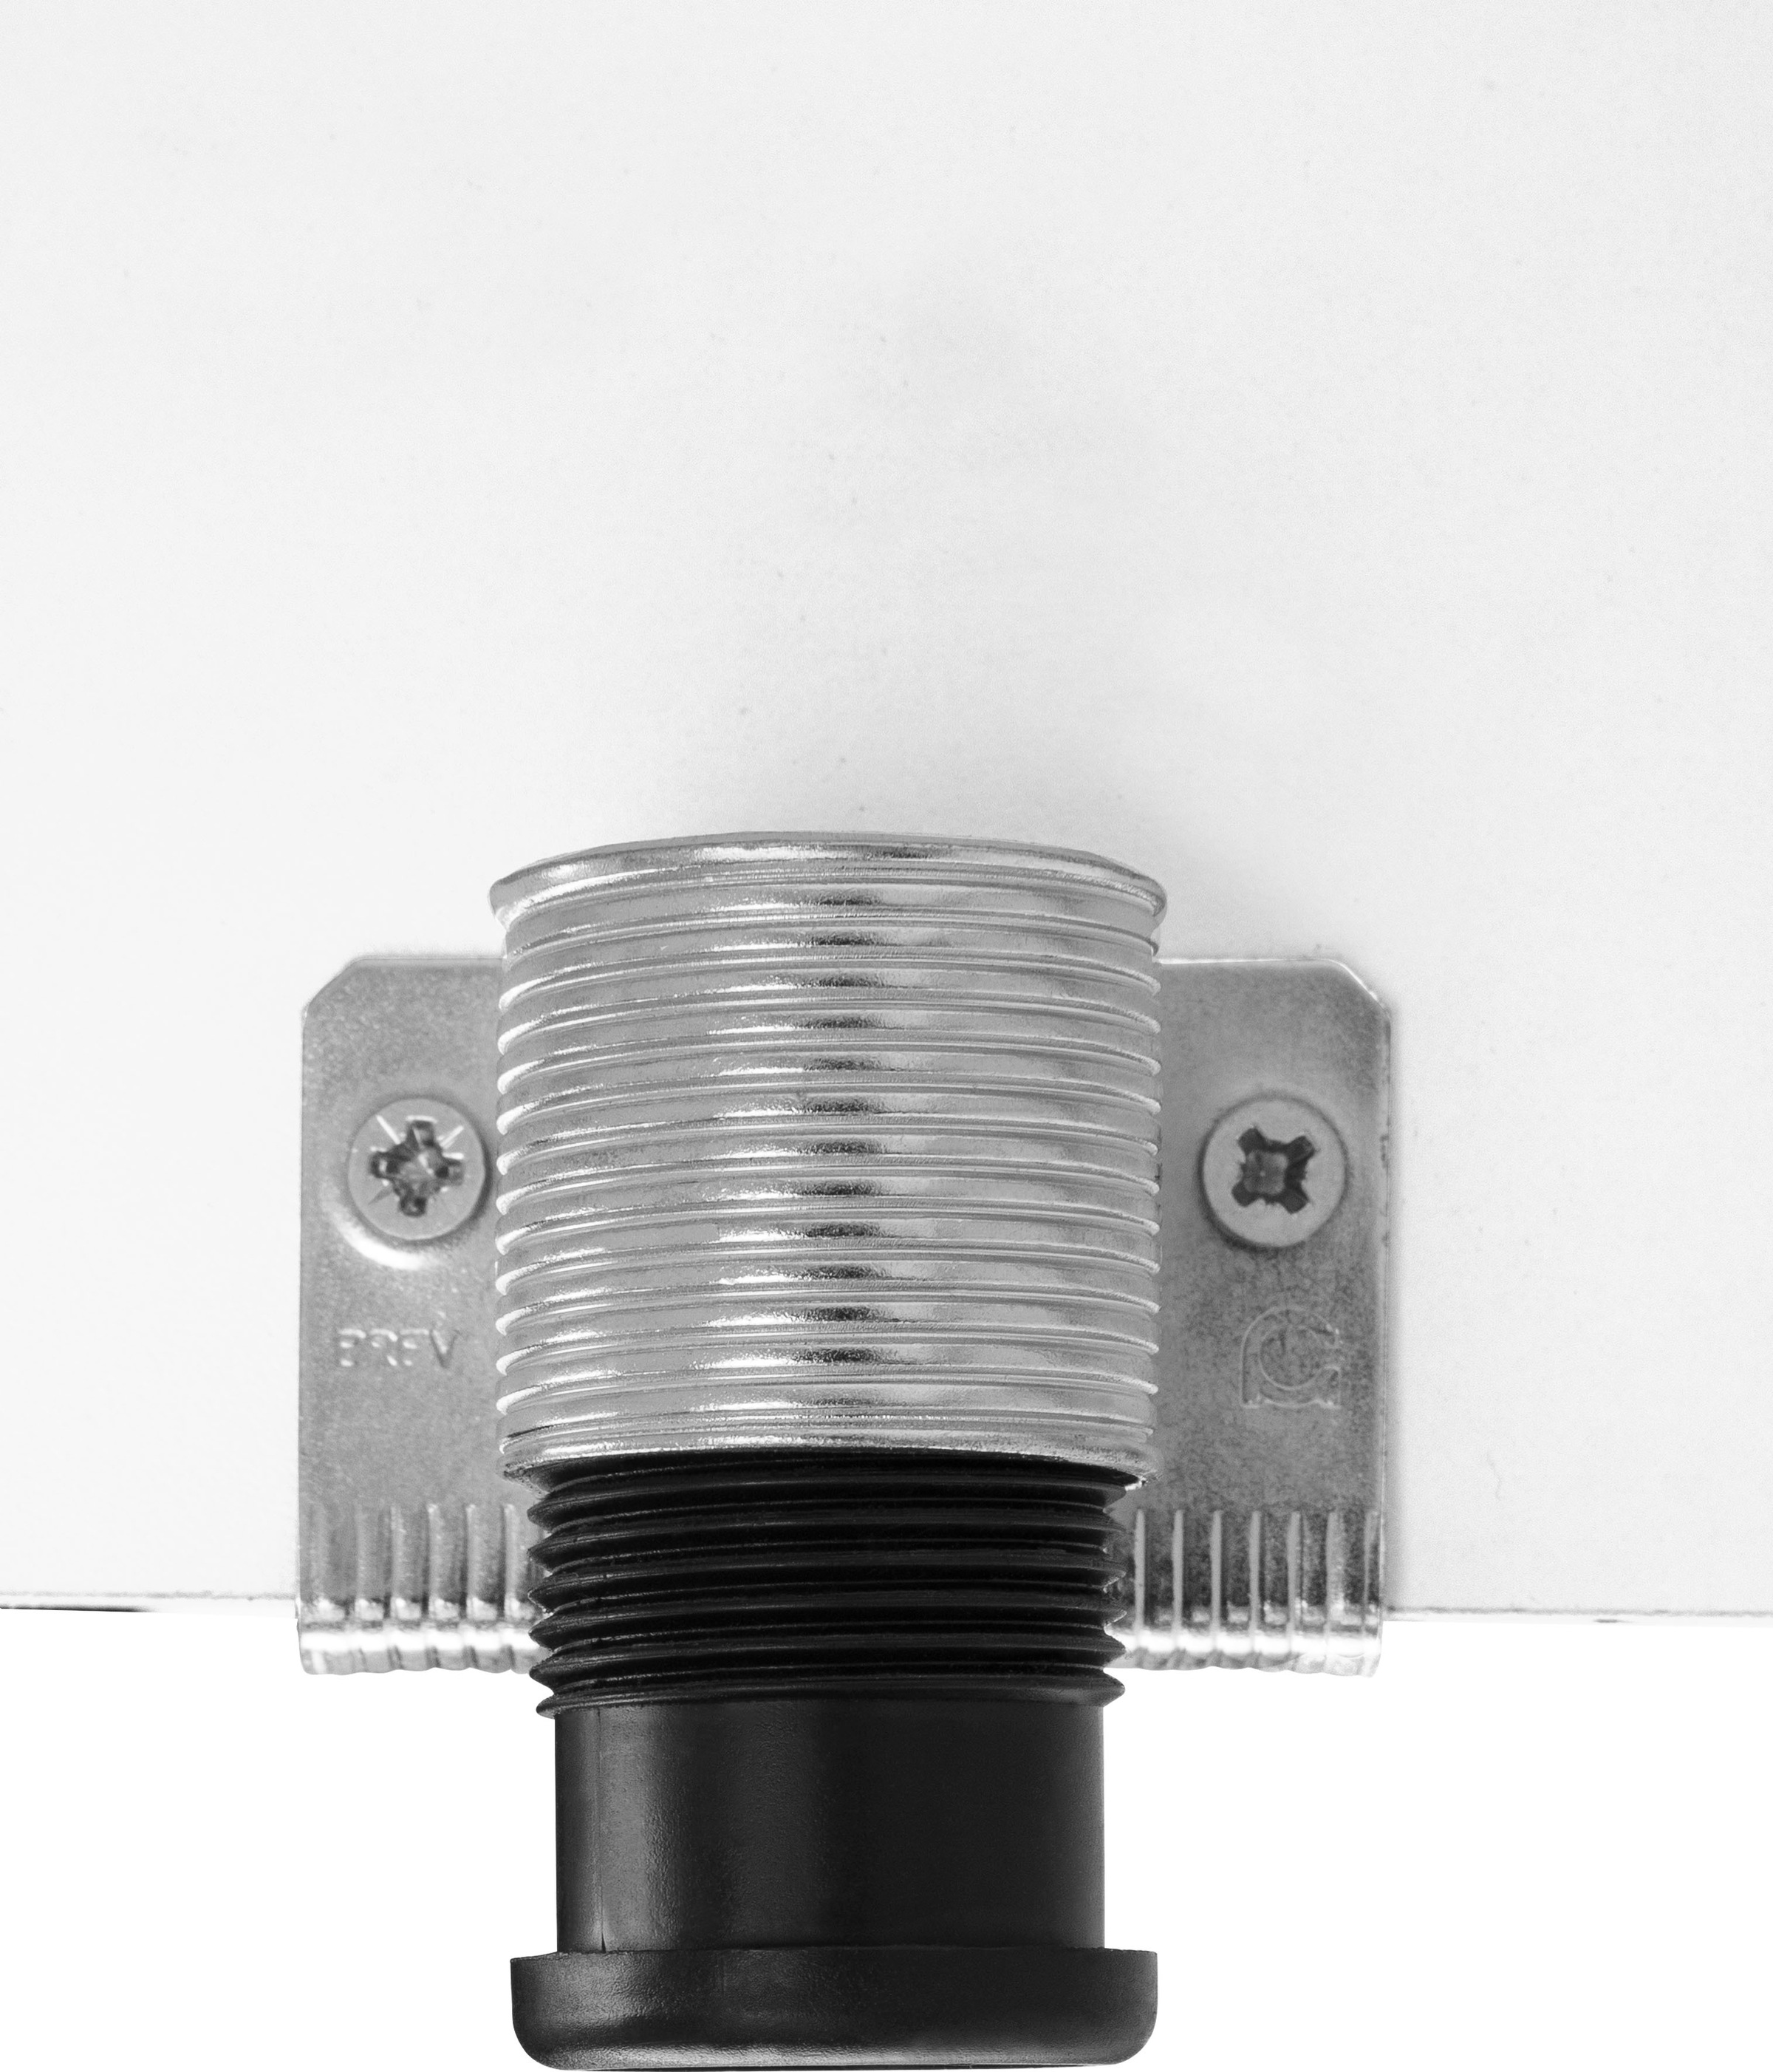 OPTIFIT Hochschrank »Iver«, Breite 60 cm, mit 4 Einlegeböden, für viel Stauraum